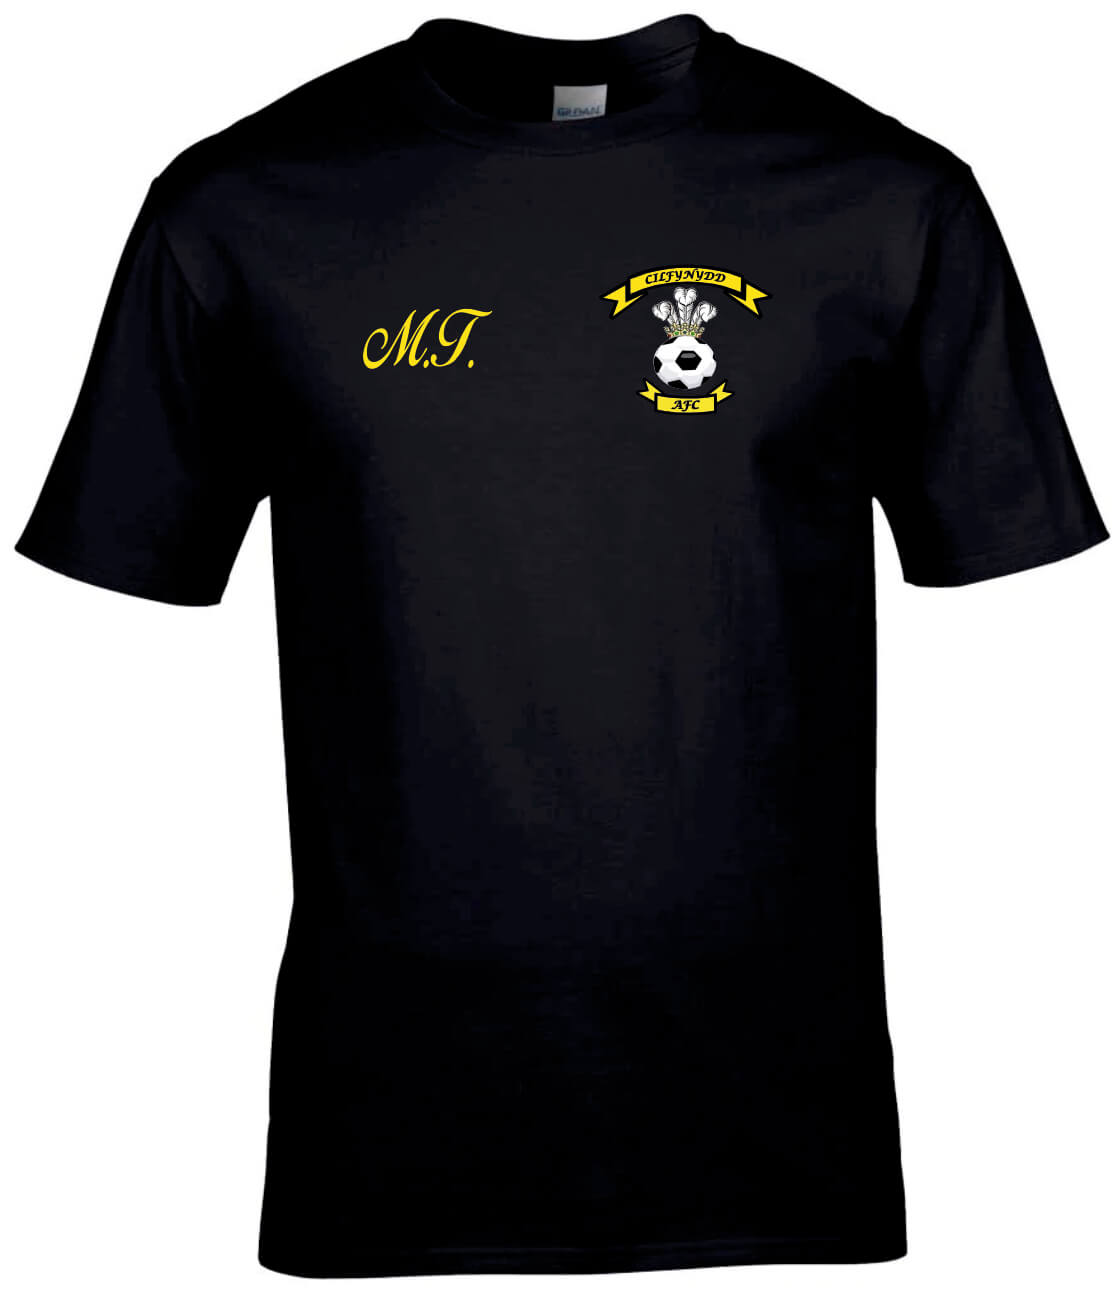 Cilfynydd AFC Standard T-Shirt